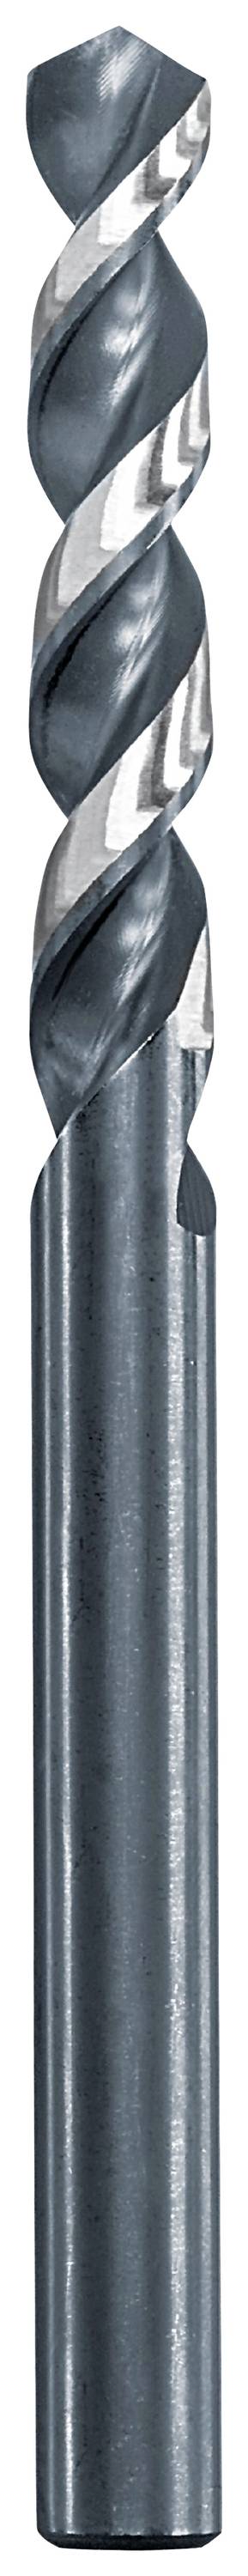 KWB 258632 Metall-Spiralbohrer 3.2 mm Gesamtlänge 65 mm 1 St.